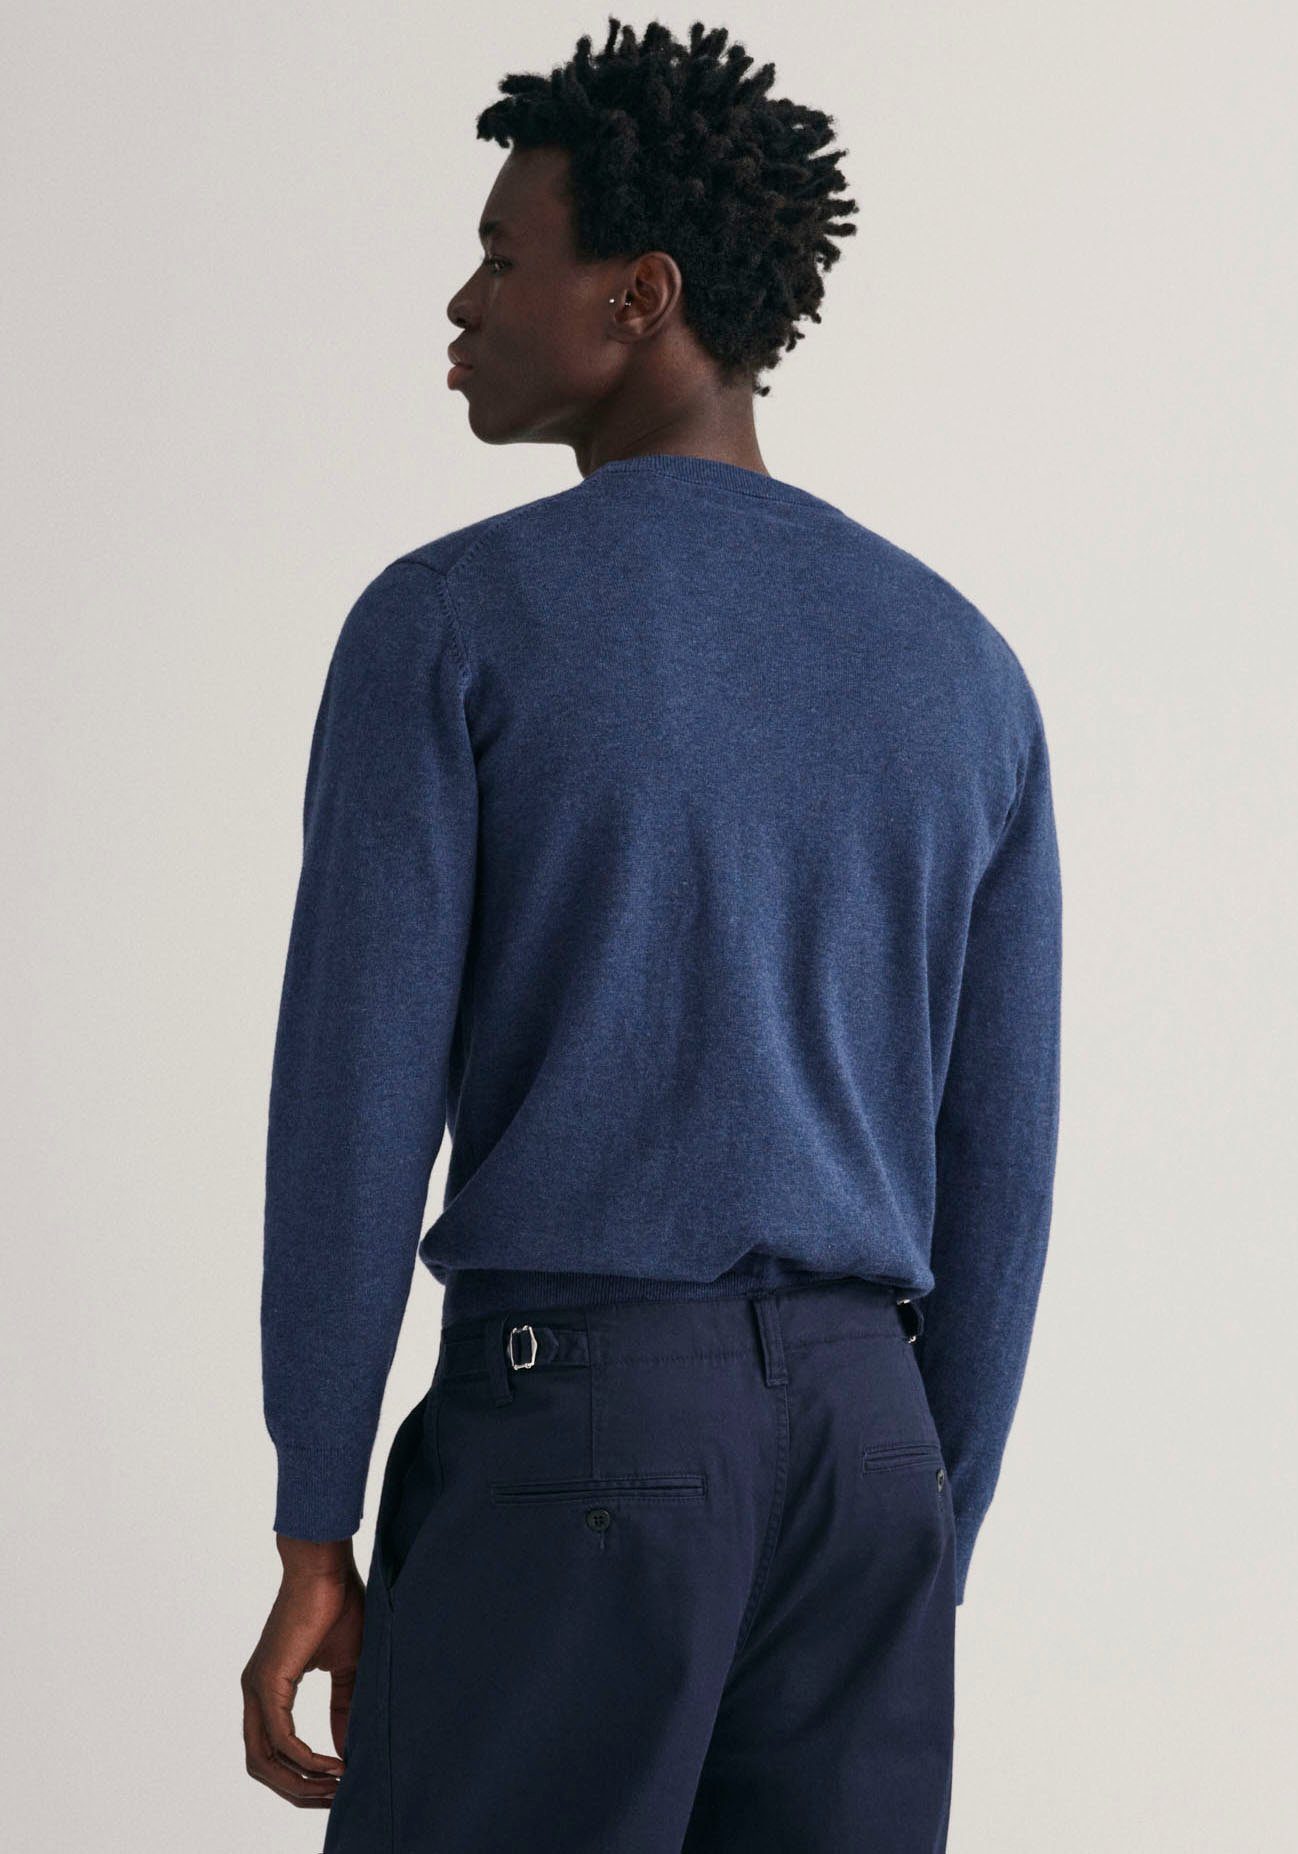 Cotton Premium C-Neck melange dark Übergangspullover Classic jeansblue 100% Strickpullver Baumwolle, Rundhalspullover aus Gant weicher